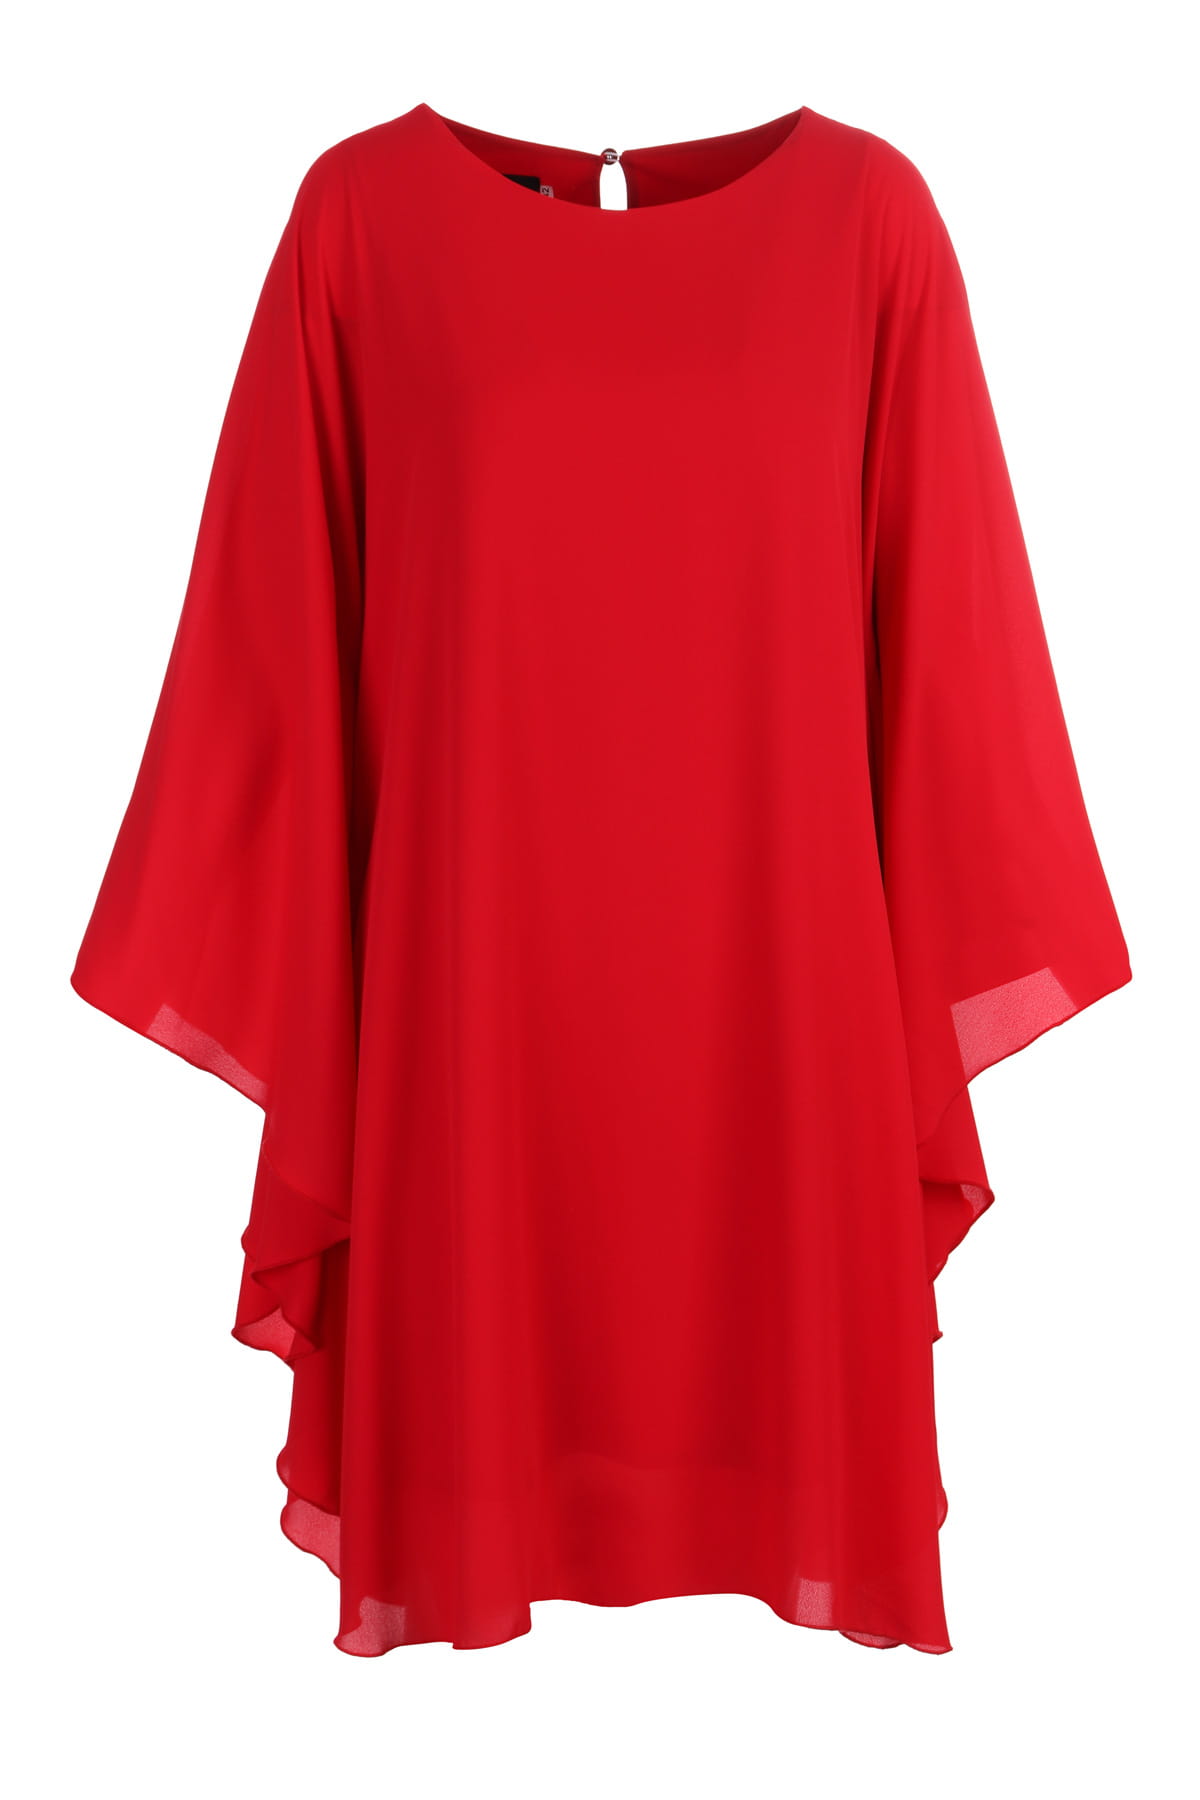 Sukienka szyfonowa, asymetryczna, plus size, czerwona